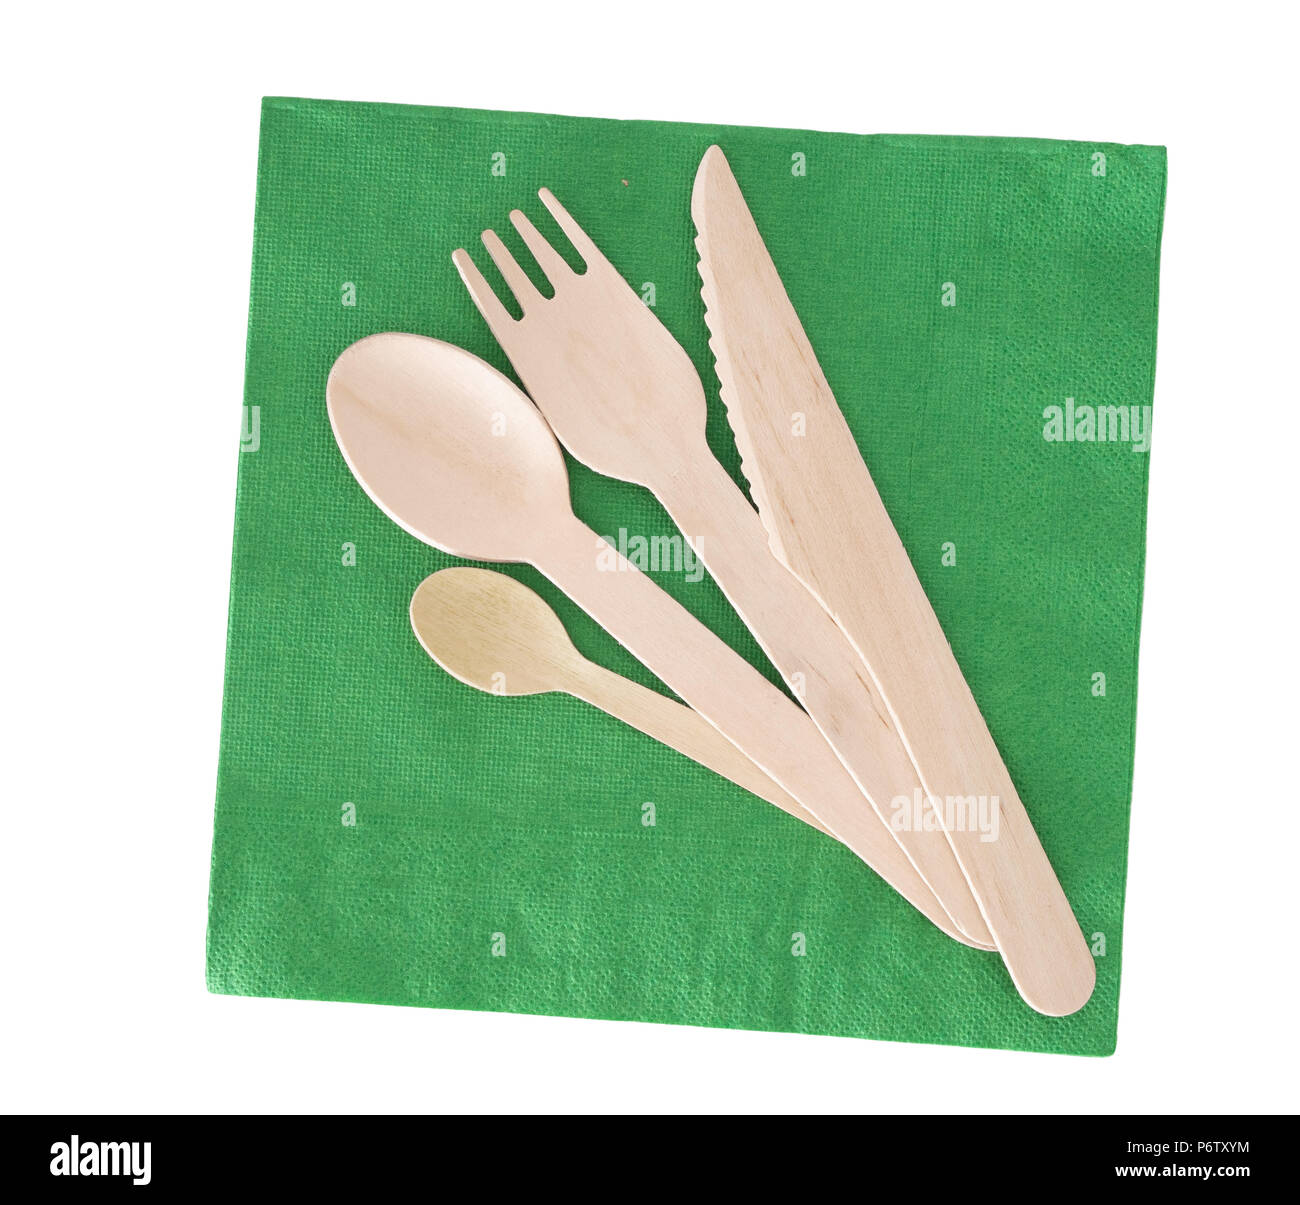 Platos de cartón desechables. tenedores y cucharas de madera